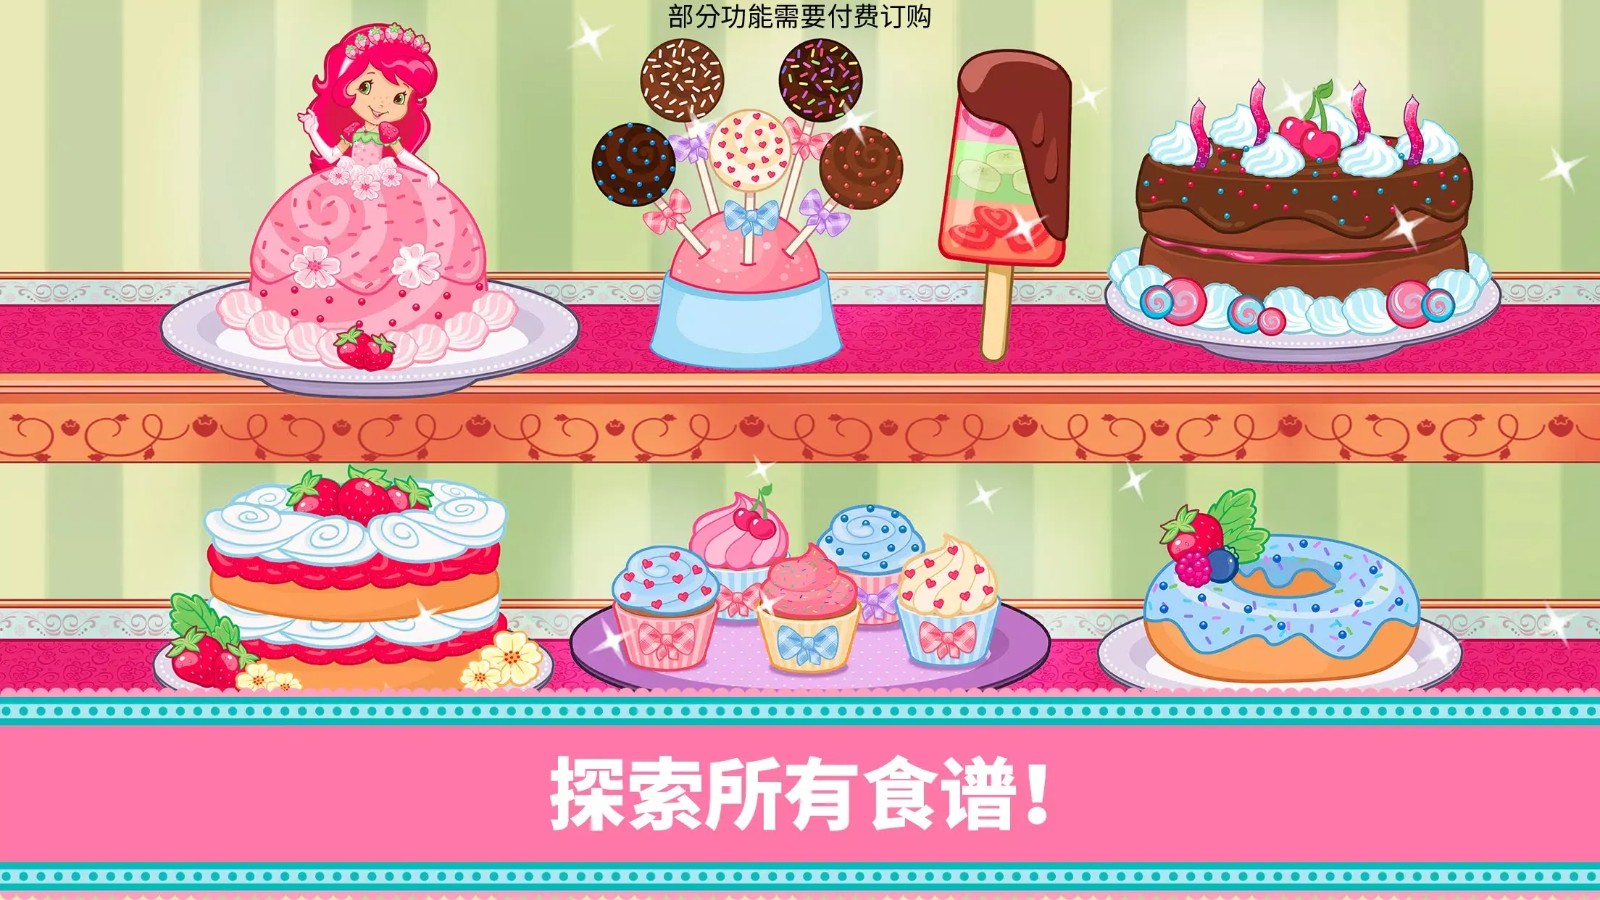 草莓甜心烘焙店所有蛋糕解锁版3